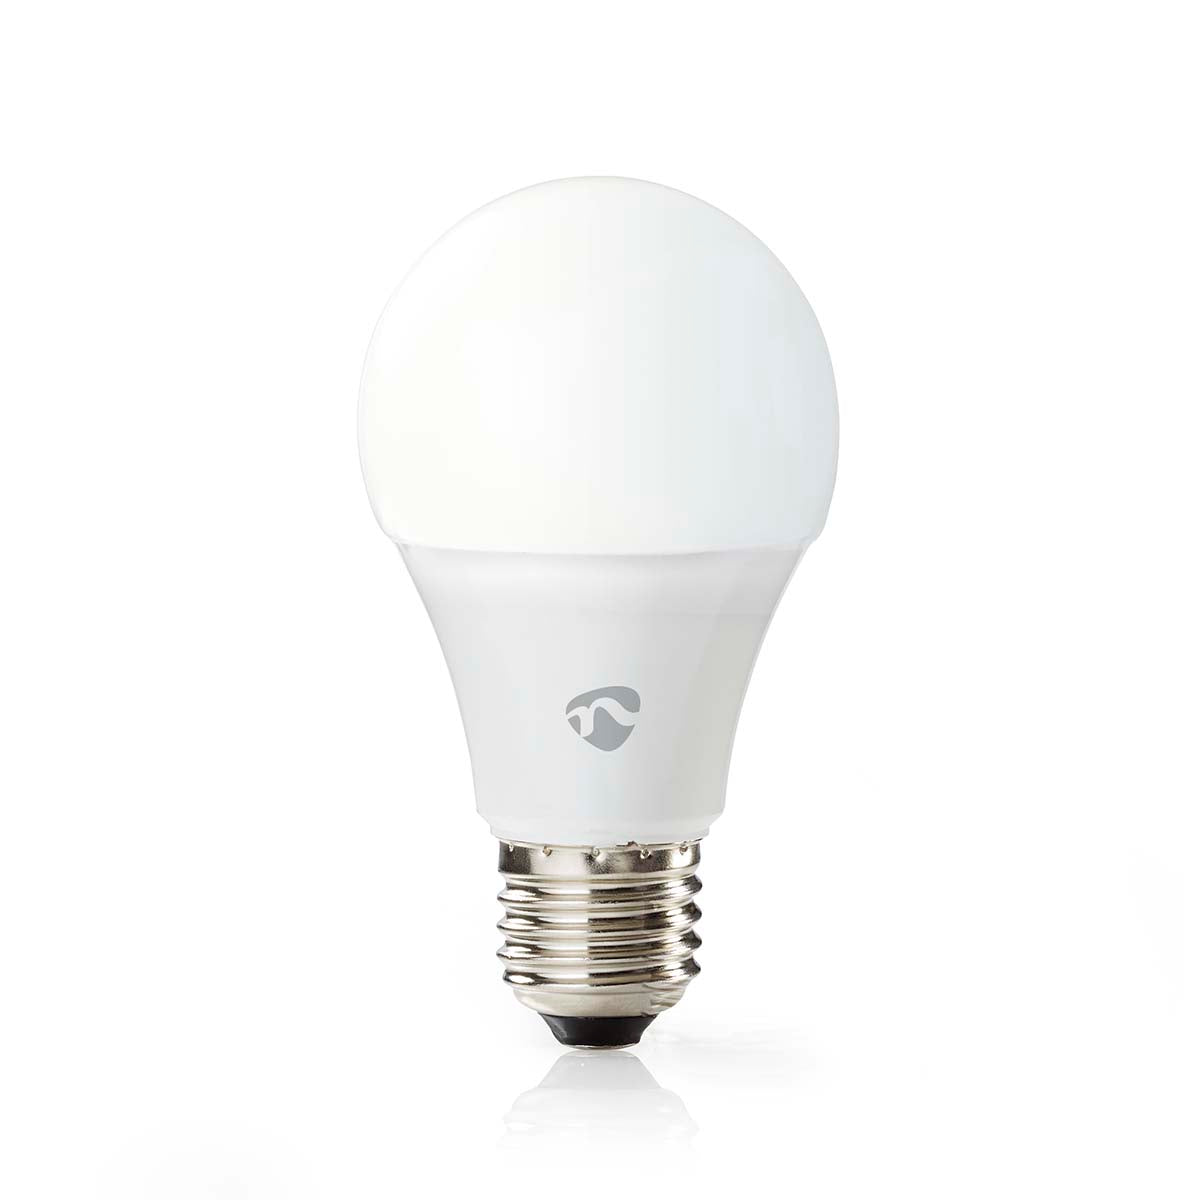 Lâmp. LED Branco Qt e Frio|Wi-Fi|E27|806 lm|9 W